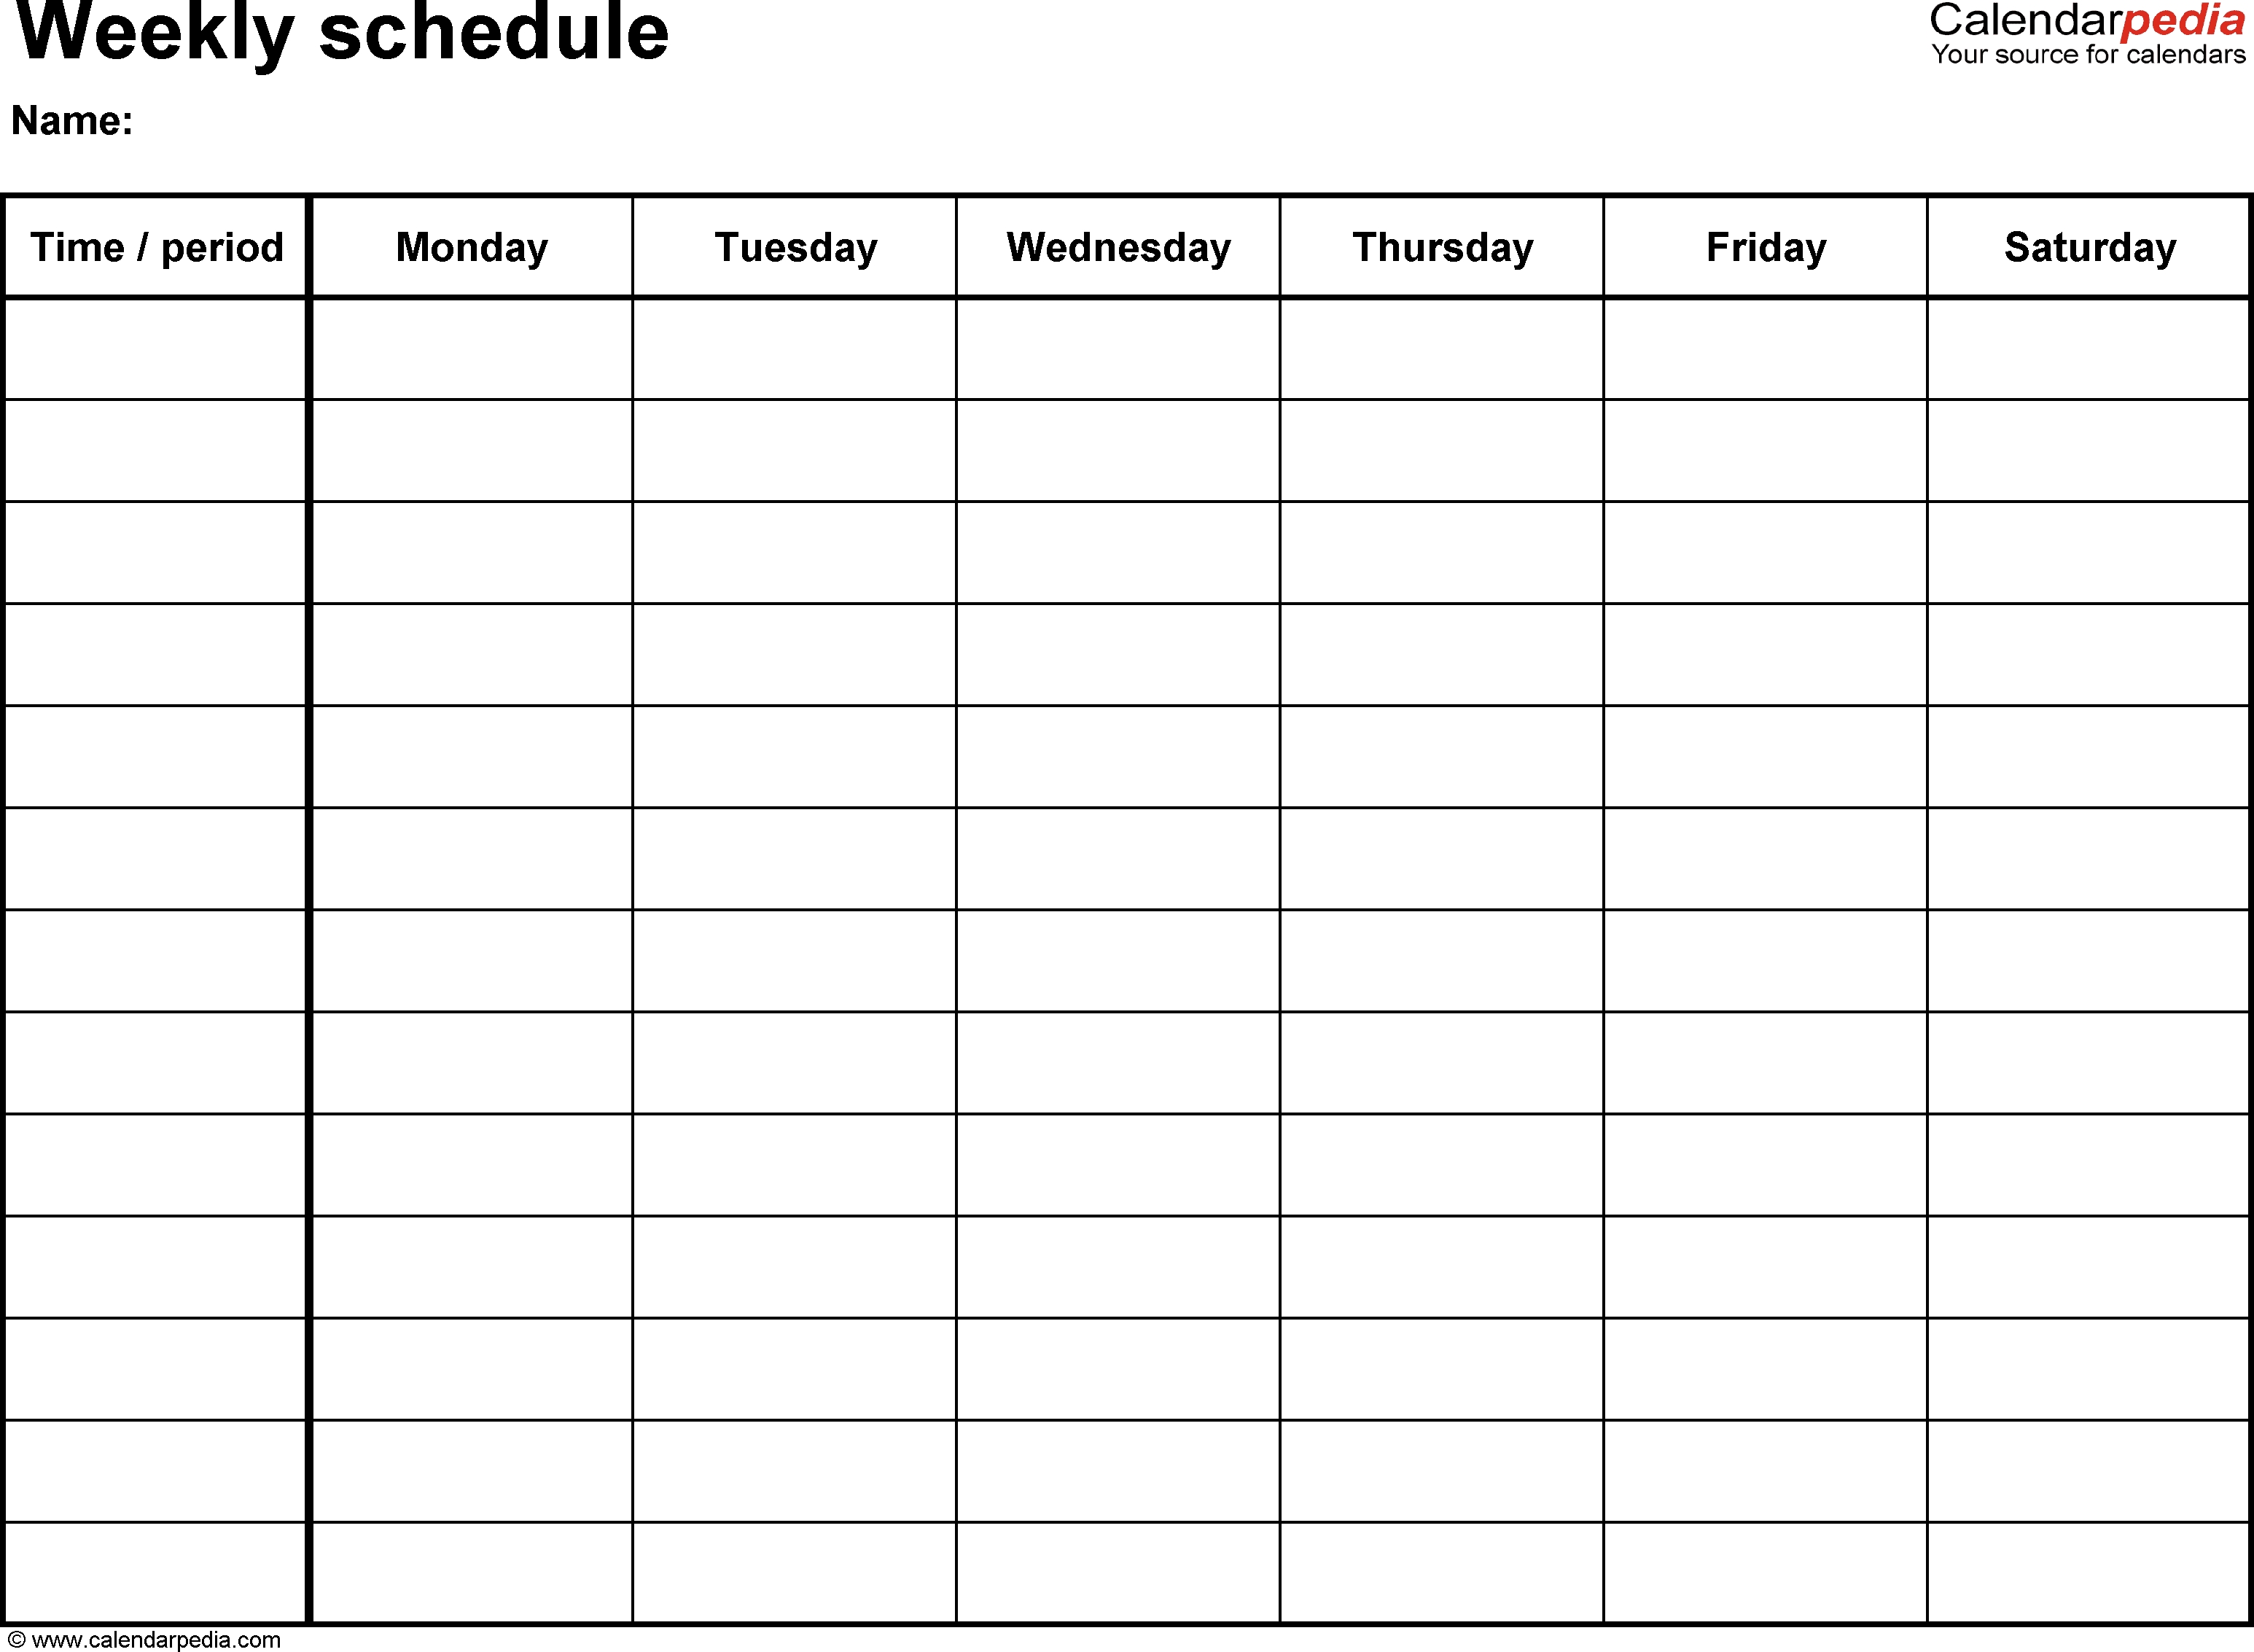 One Week Calendar Template Word - Wallofcoins.wallofcoins.tk inside One Week Calendar Template Printable